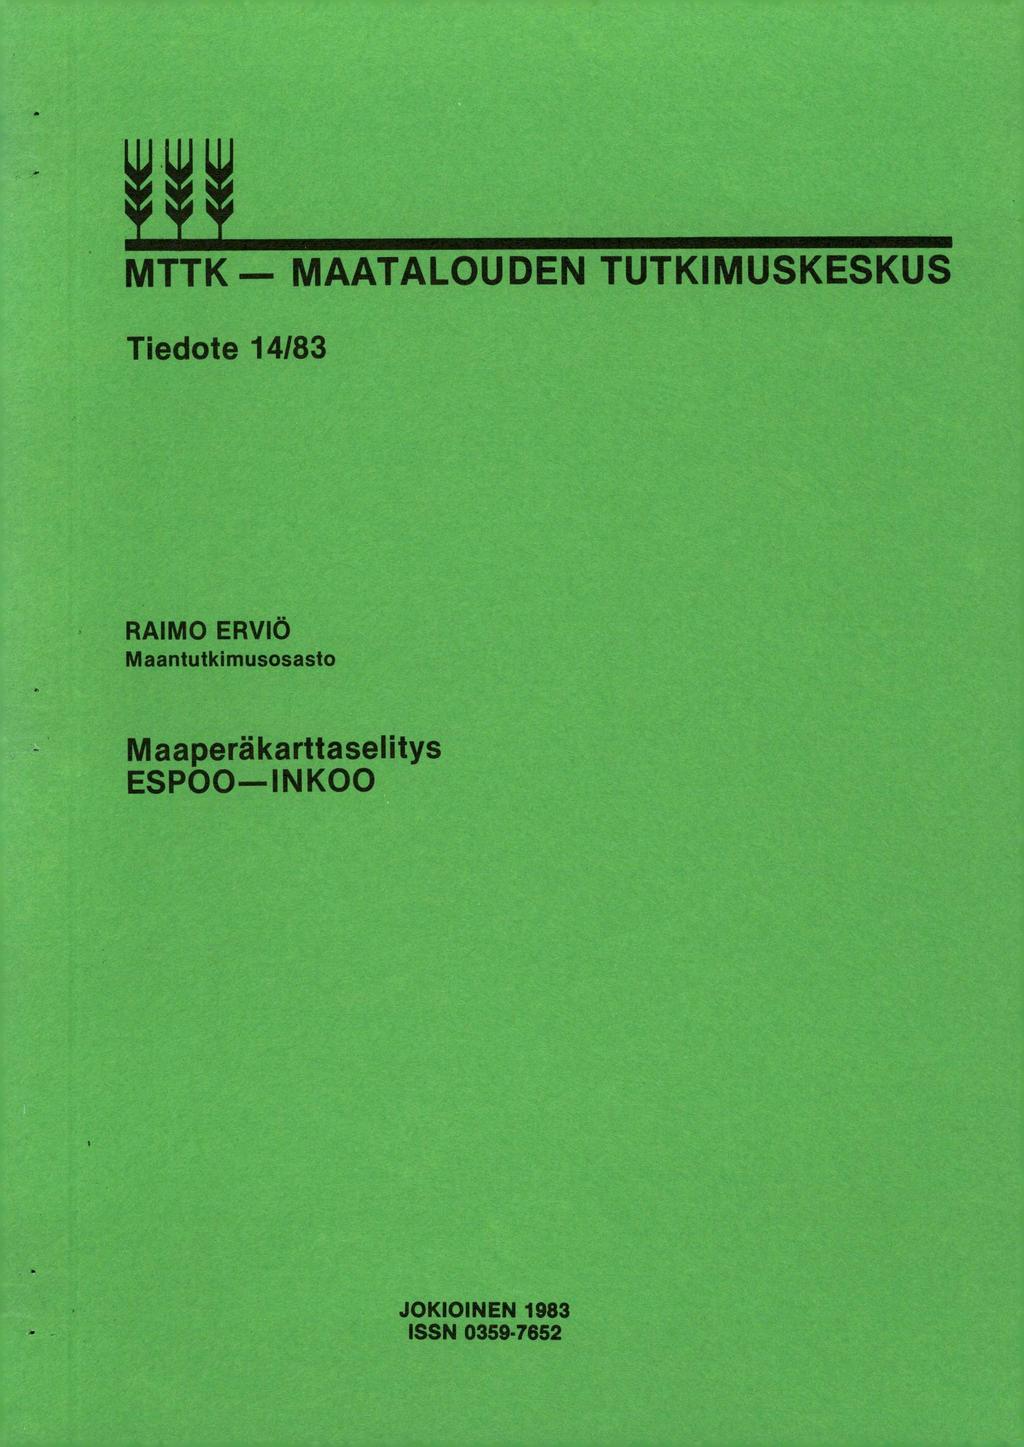 MTTK MAATALOUDEN TUTKIMUSKESKUS Tiedote 14/83 RAIMO ERVIÖ